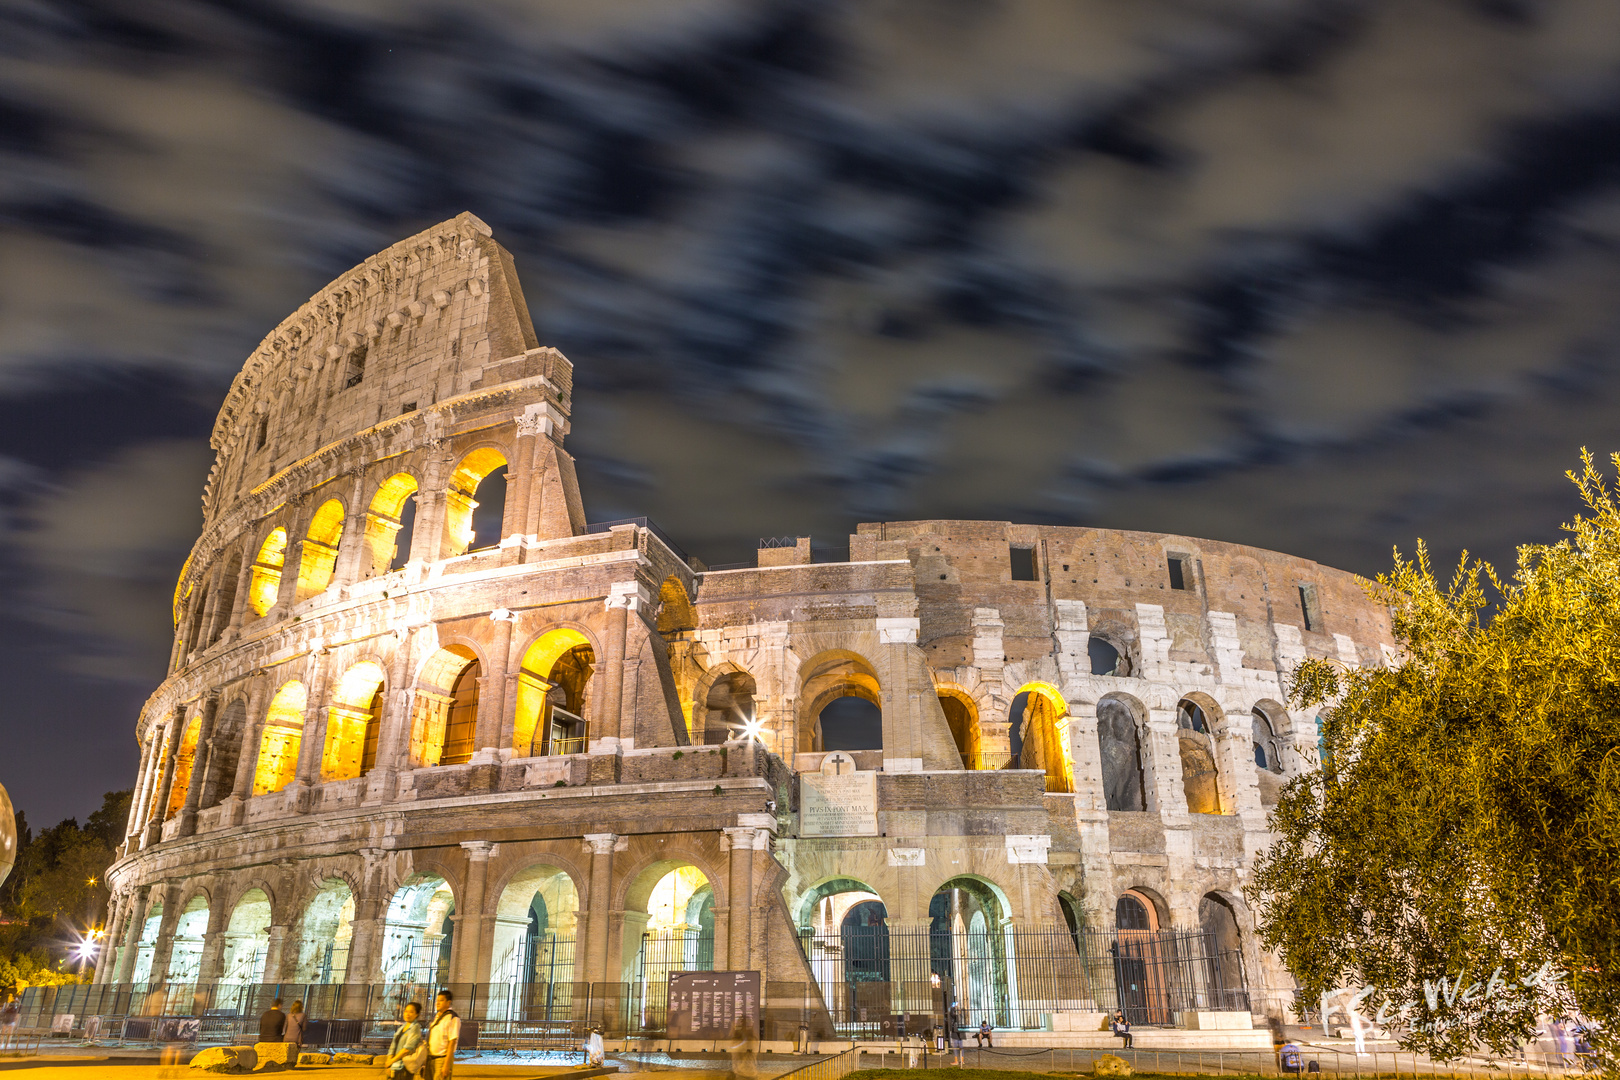 Kolosseum ROM bei Nacht